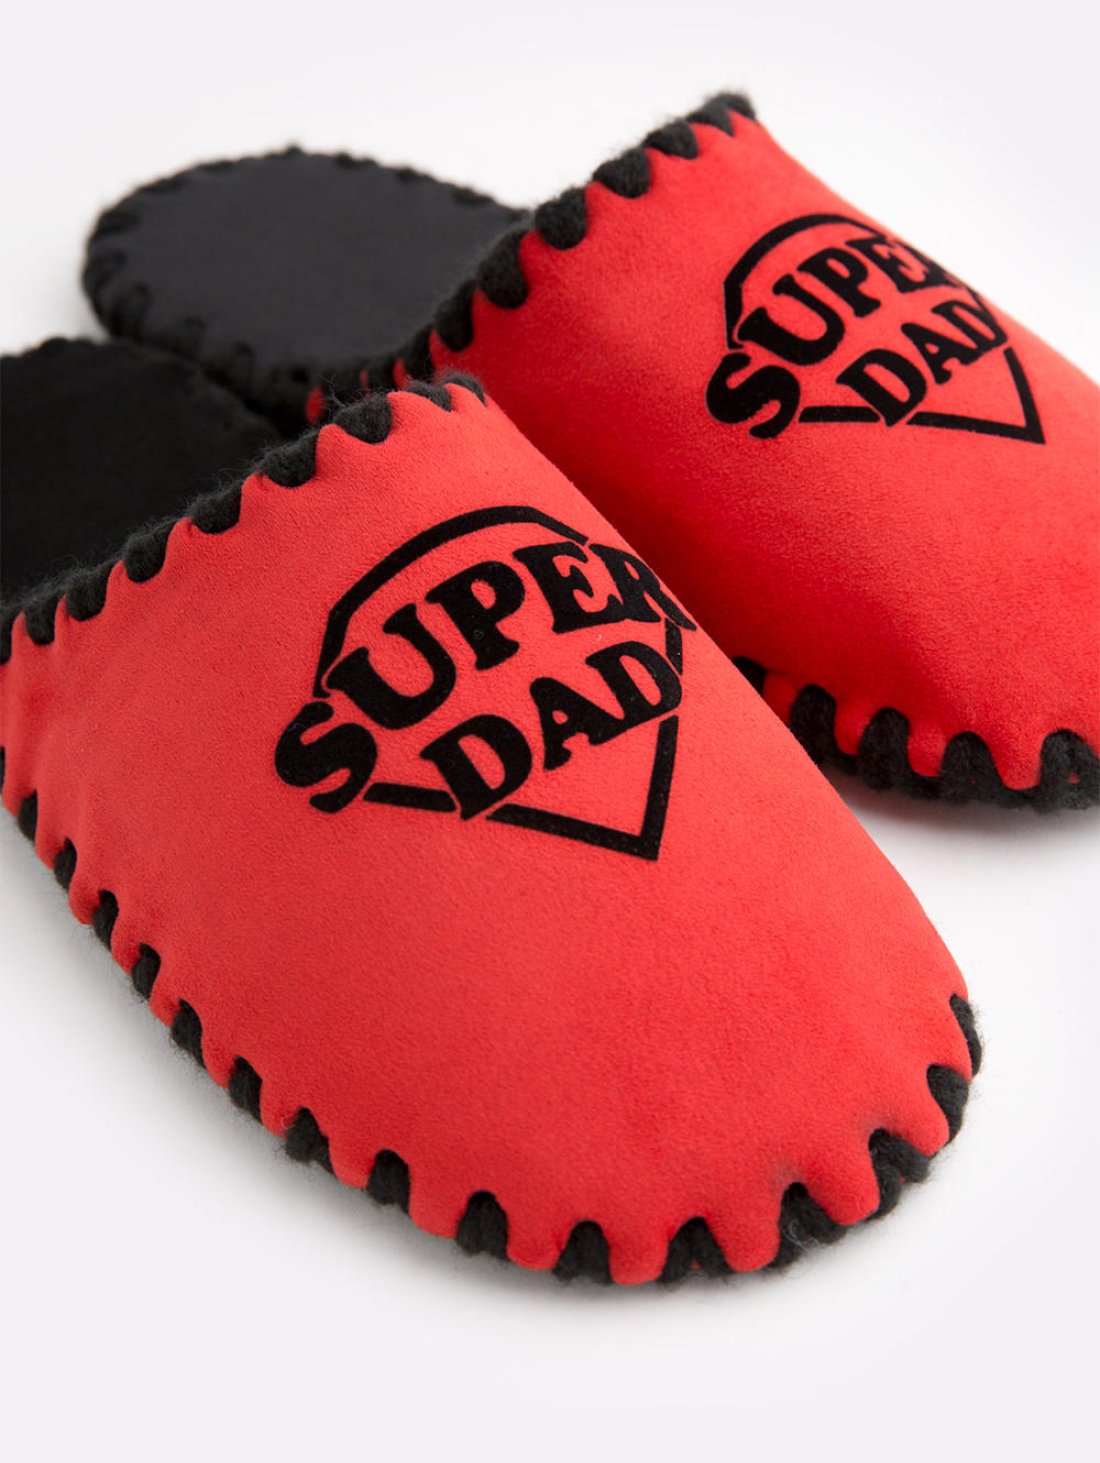 Закрытые мужские тапочки для дома с надпись Super Dad, Красного цвета . Family Story Фото -4